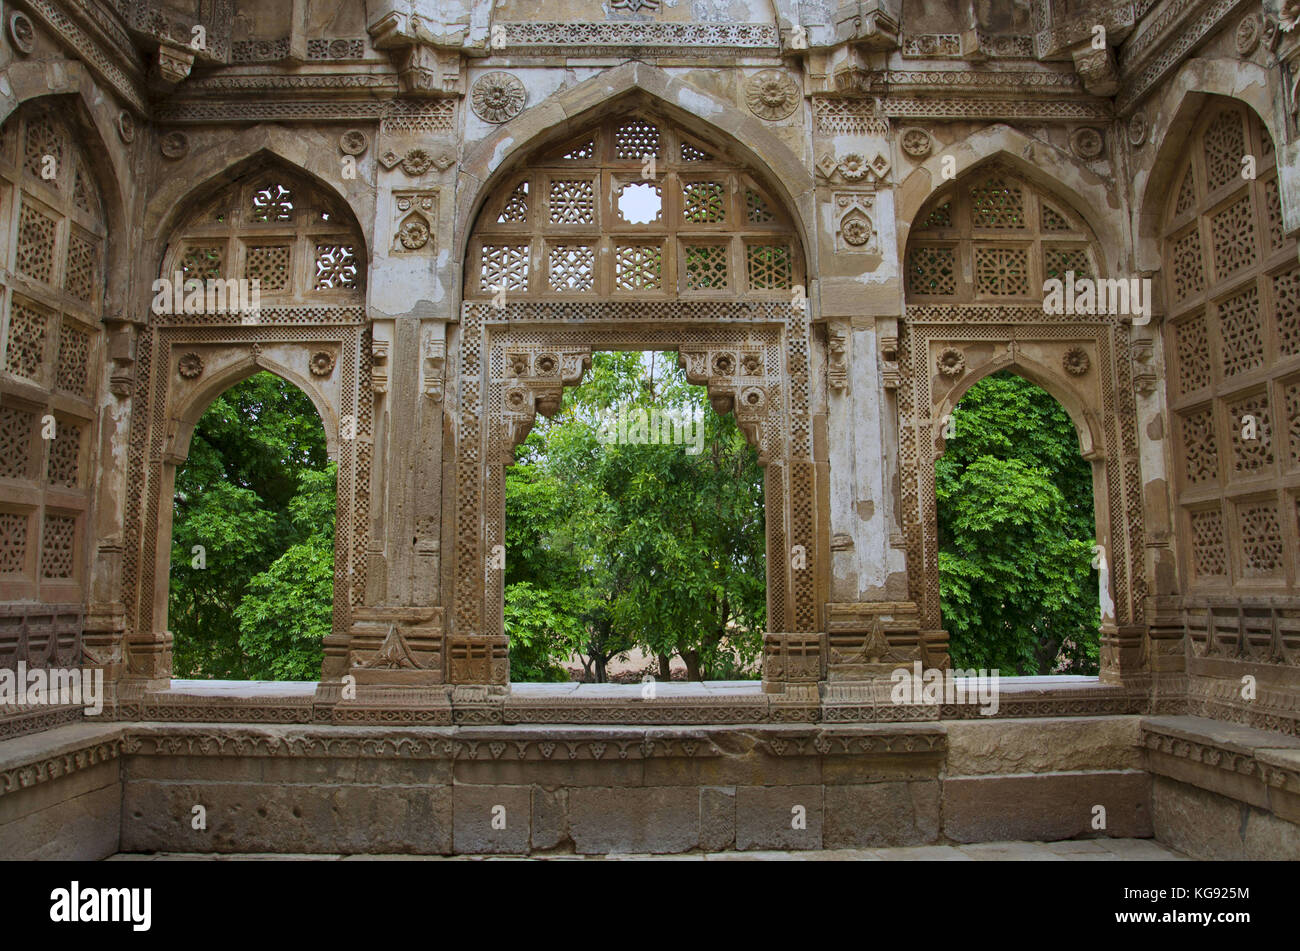 Innere geschnitzte Wand von Jami Masjid (Moschee), UNESCO-geschützten Champaner - Pavagadh Archäologischen Park, Gujarat, Indien. Daten bis 1513, Bau vorbei Stockfoto